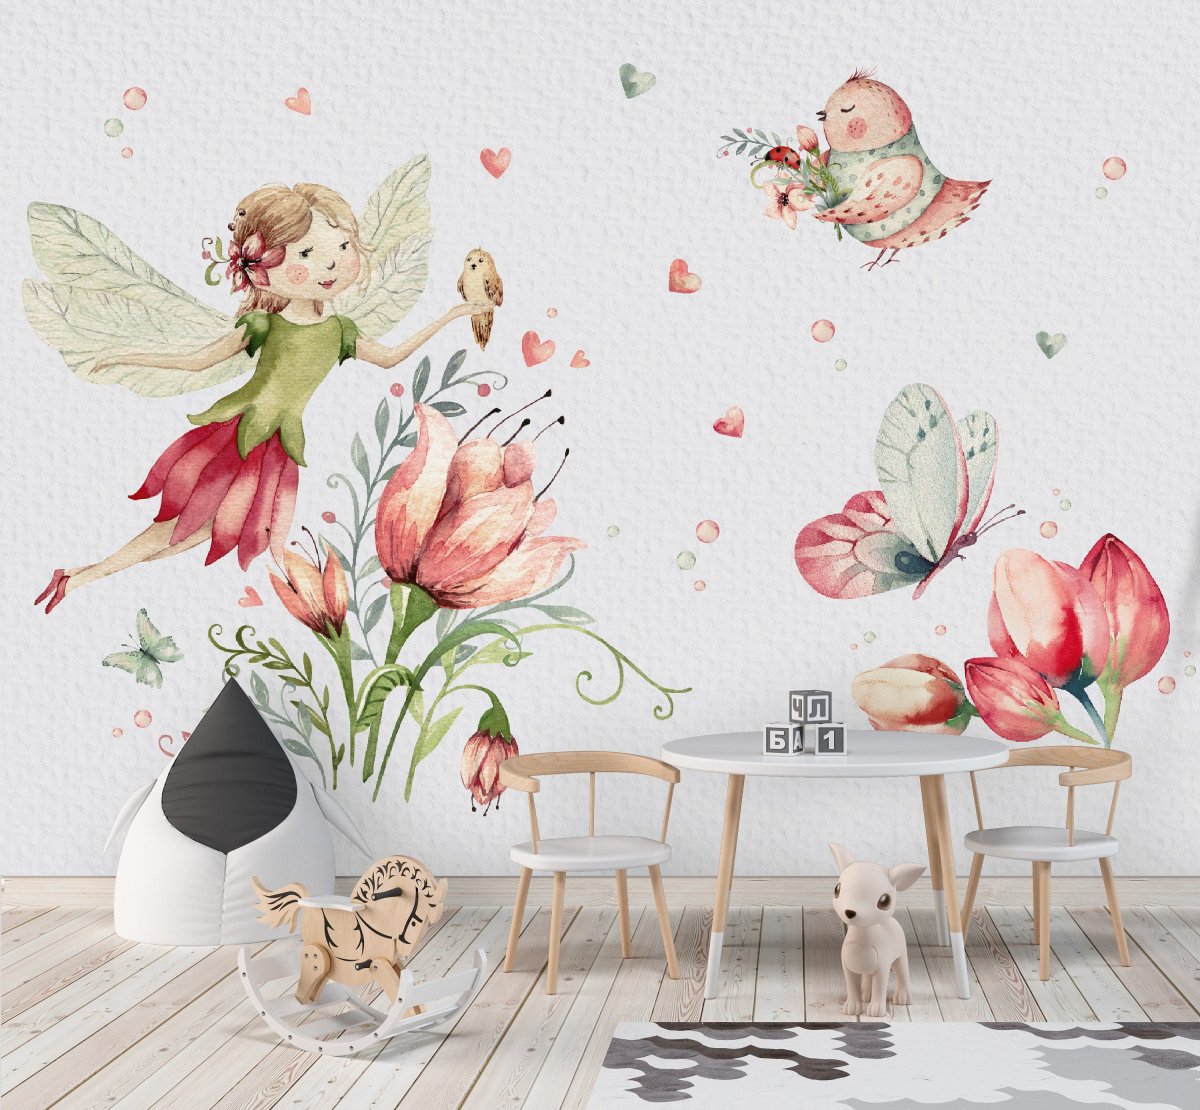 Nálepka na stenu - víla, motýľ, kvety, vtáčiky